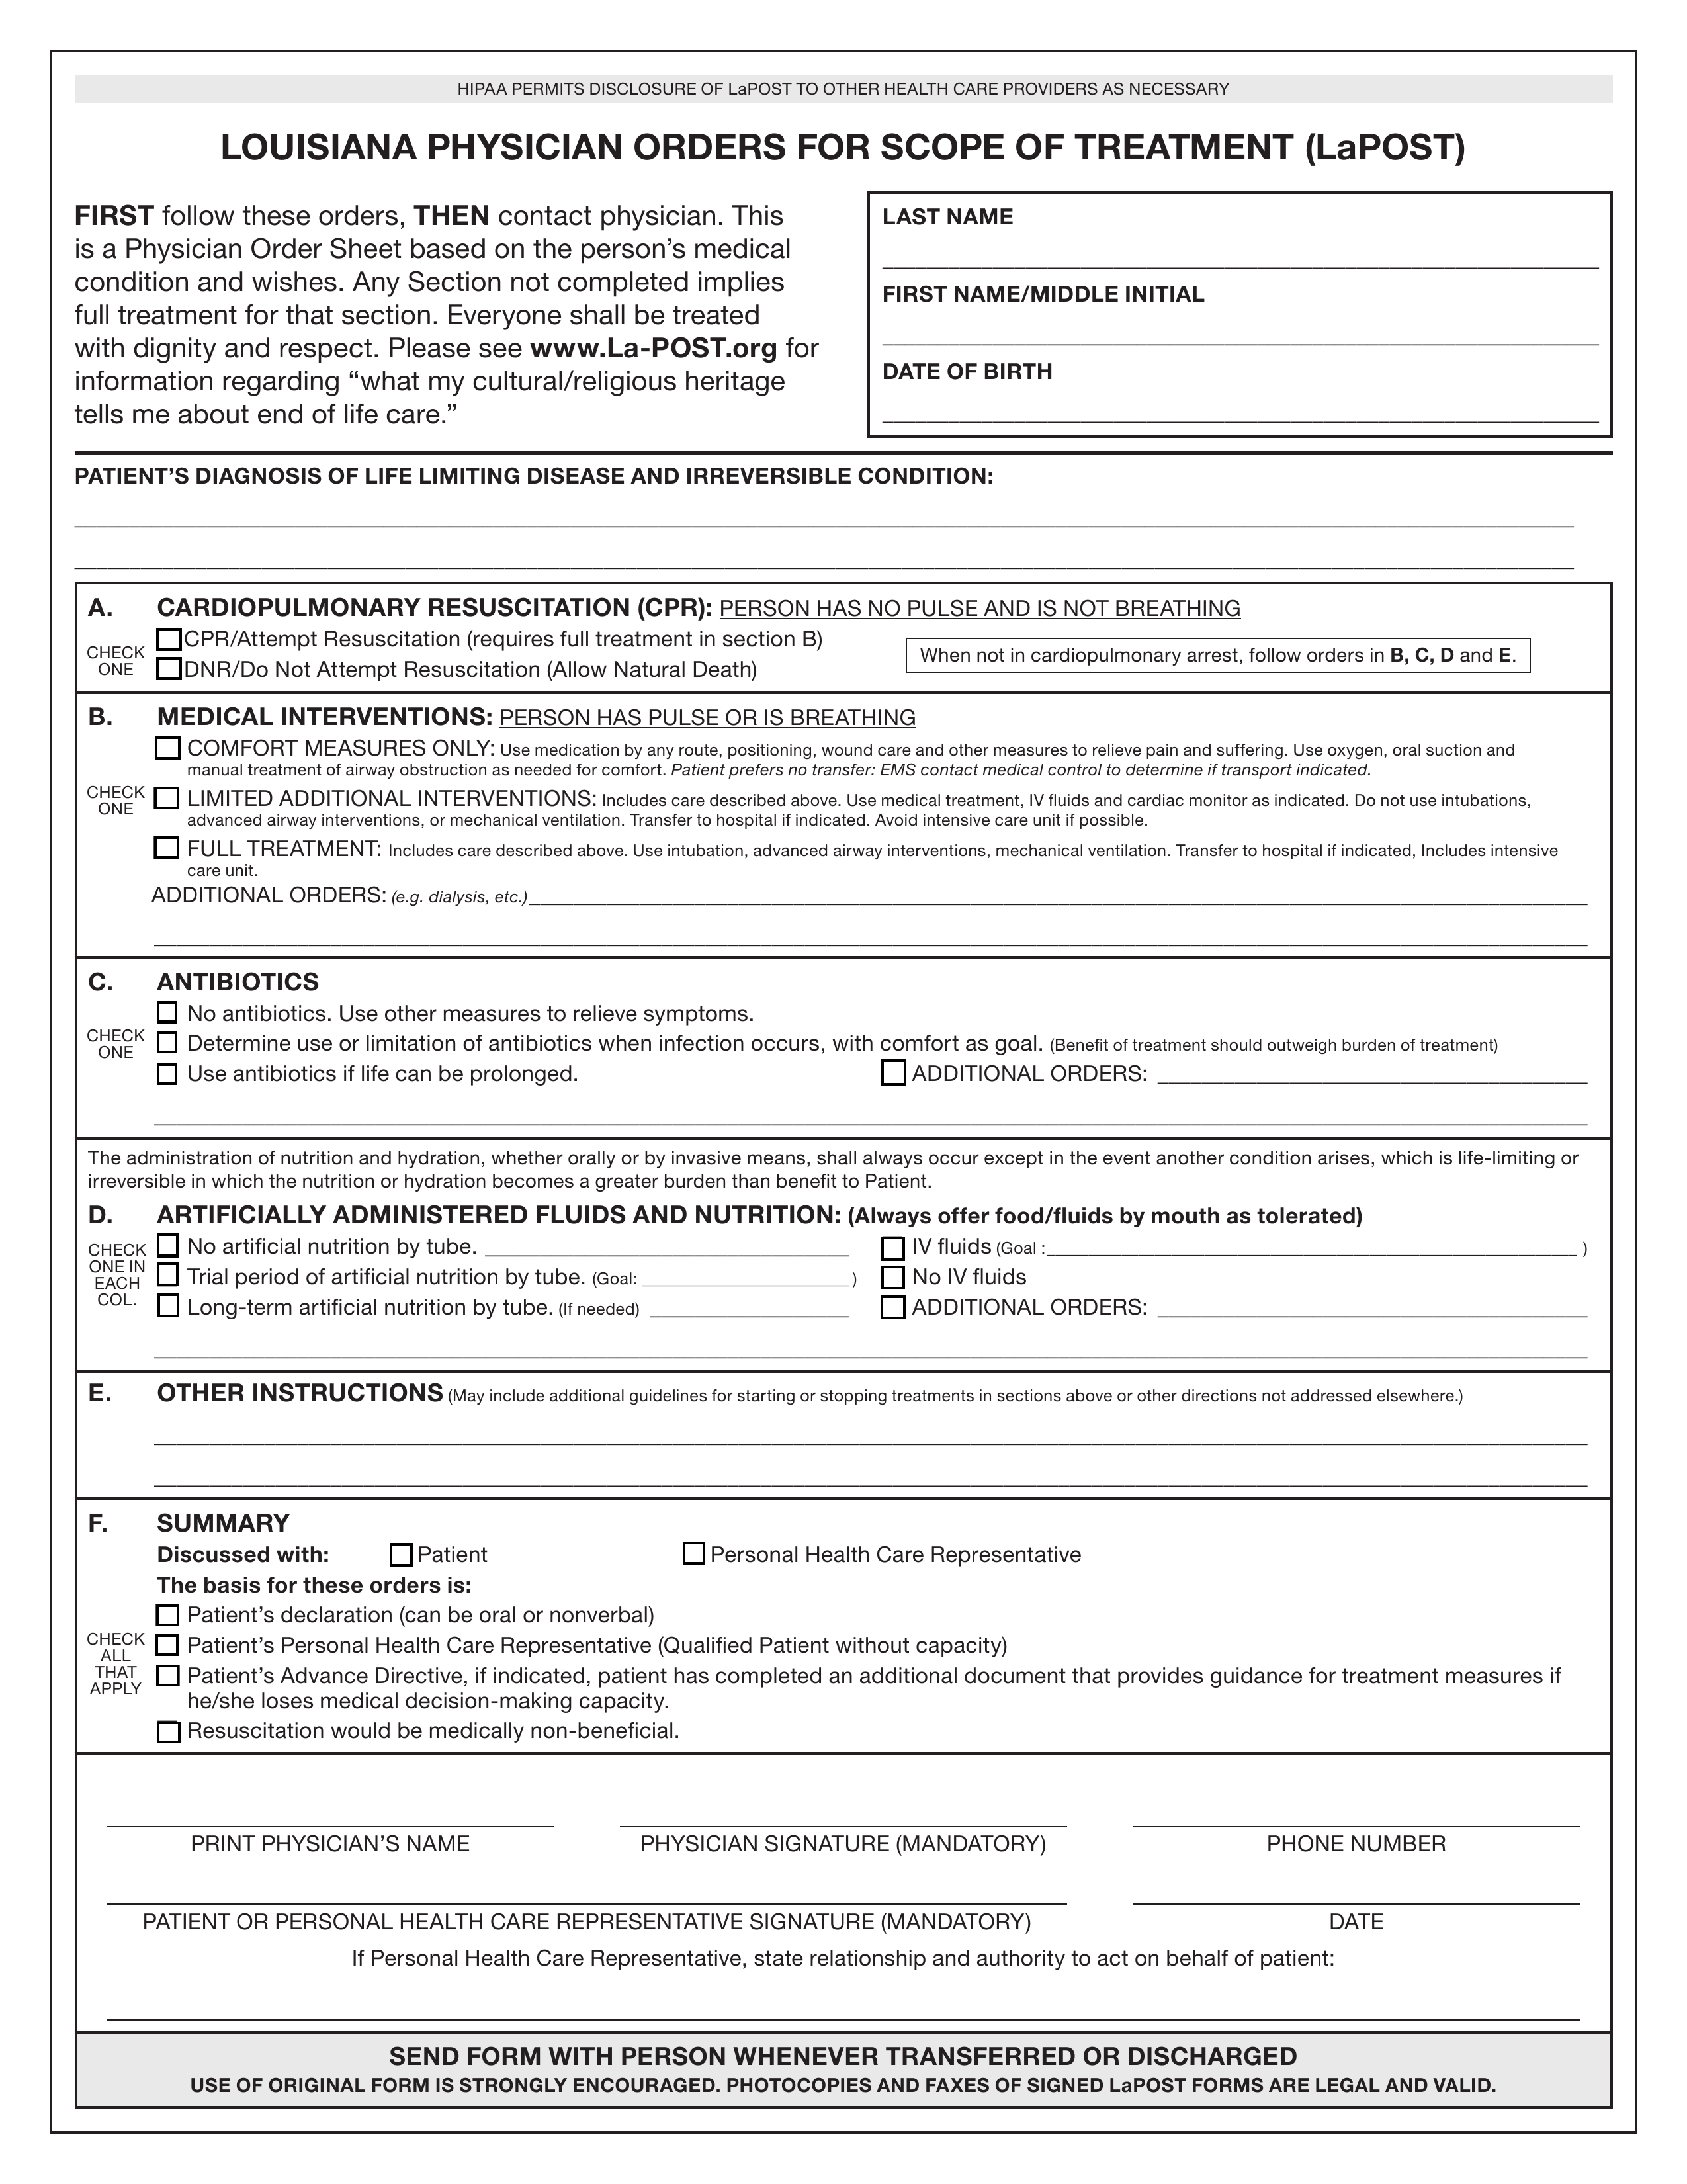 Louisiana Do Not Resuscitate (DNR) Order Form